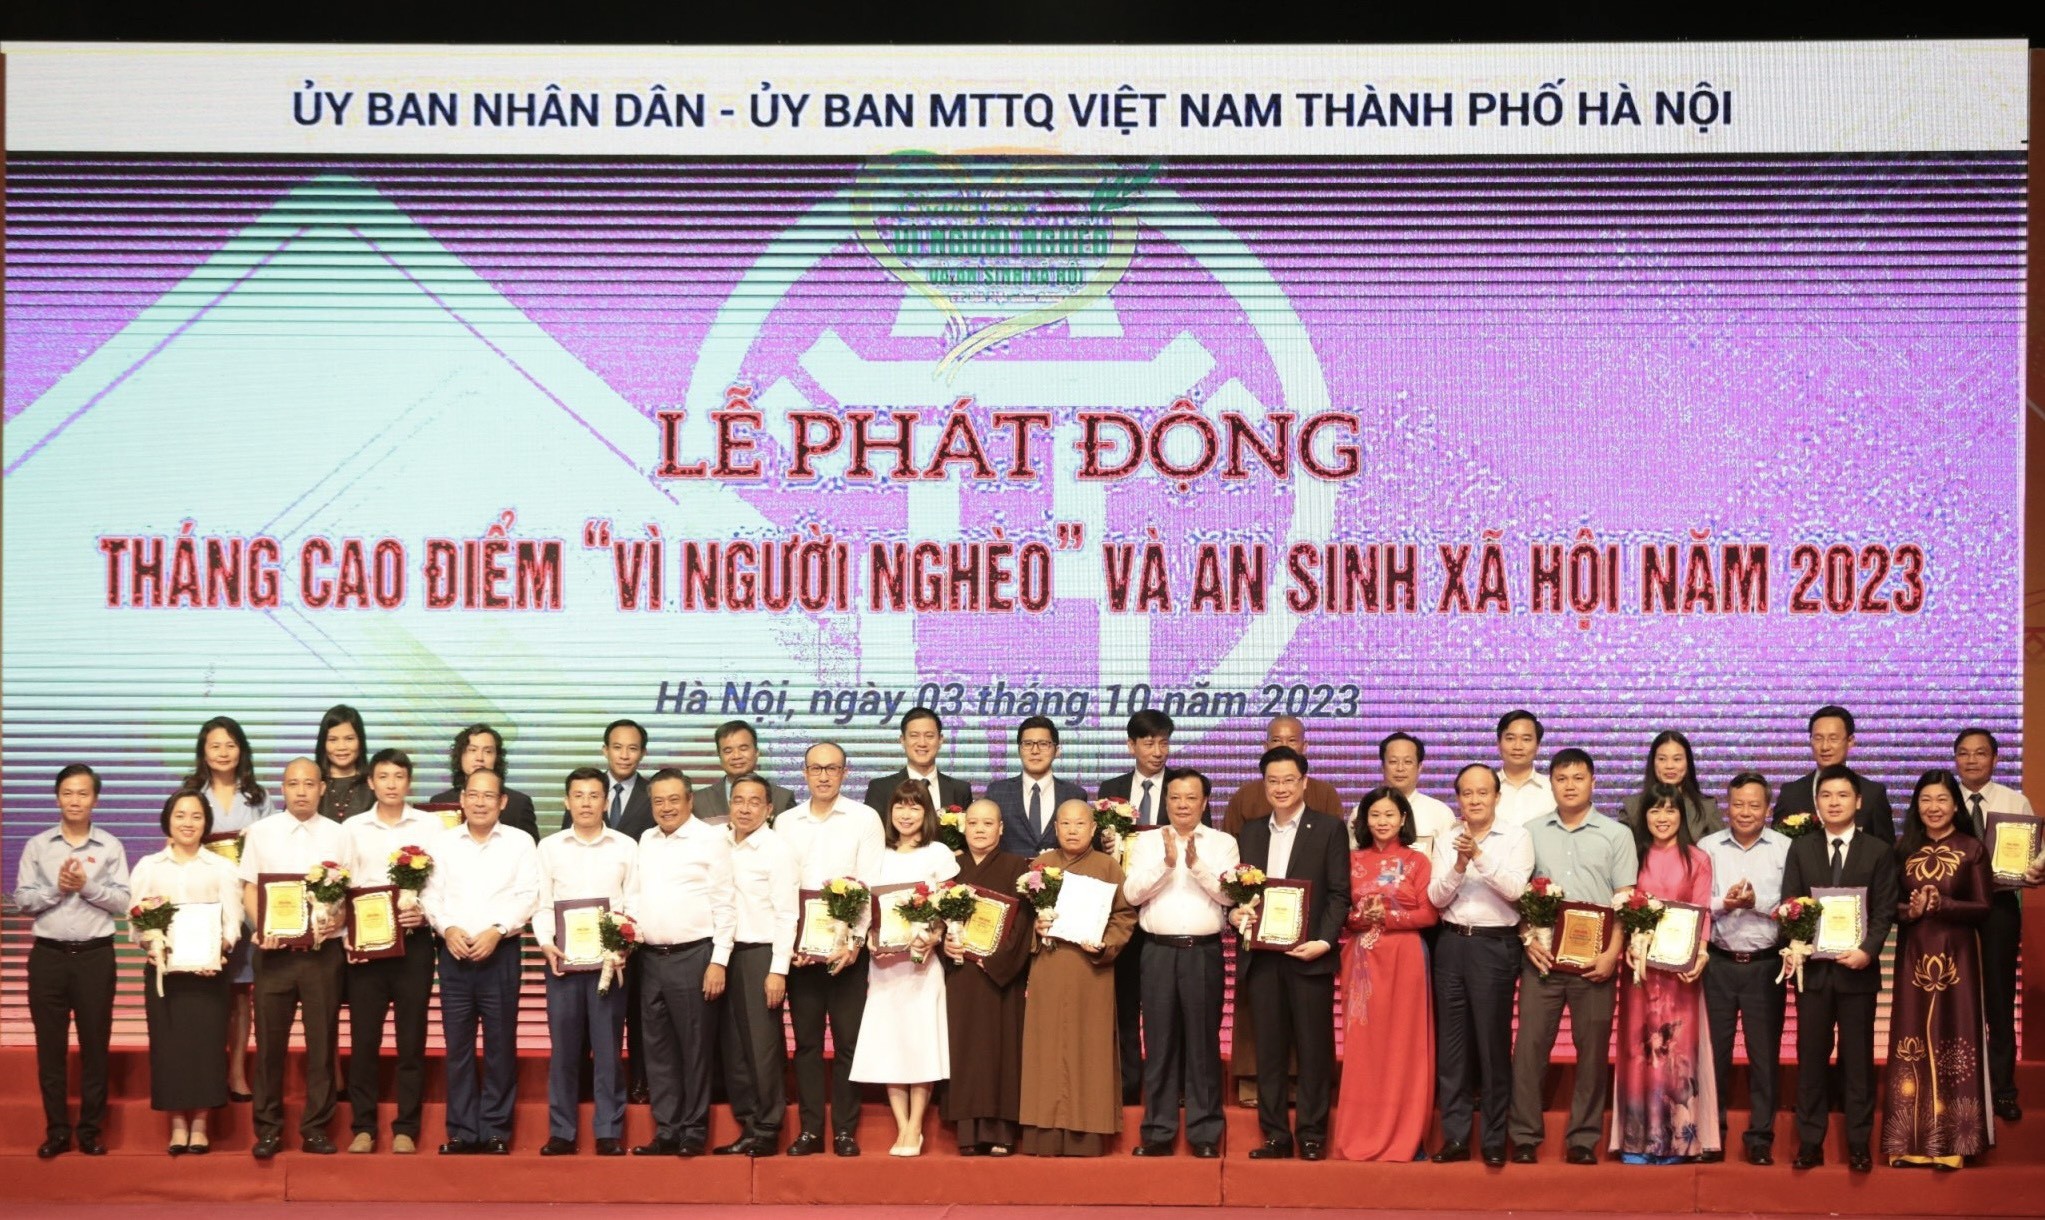 Quỹ “Vì người nghèo” Thành phố Hà Nội được T&T Group ủng hộ 1 tỷ đồng